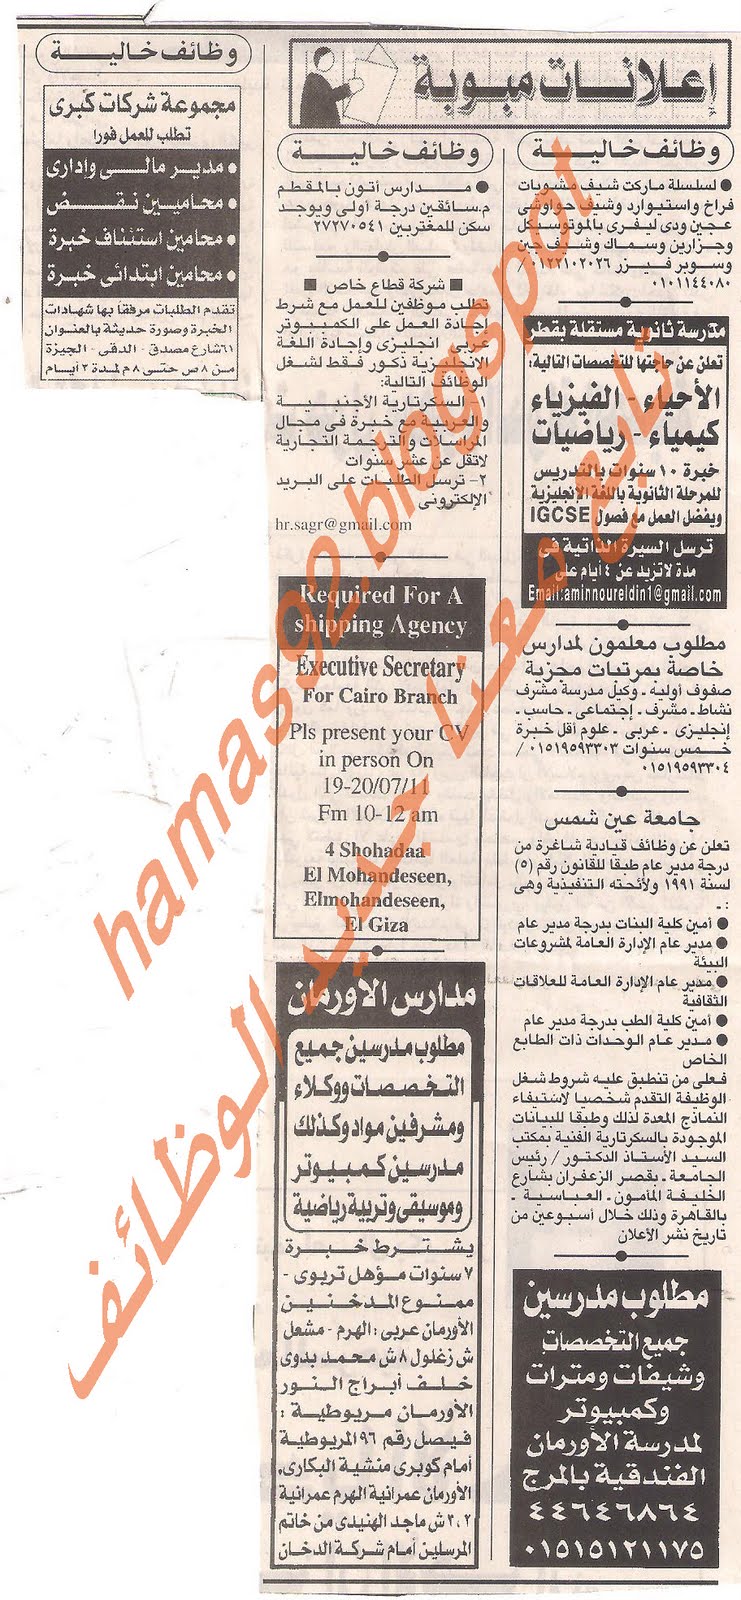 وظائف خالية من جريدة الاهرام الاحد 17 يوليو 2011 Picture+001